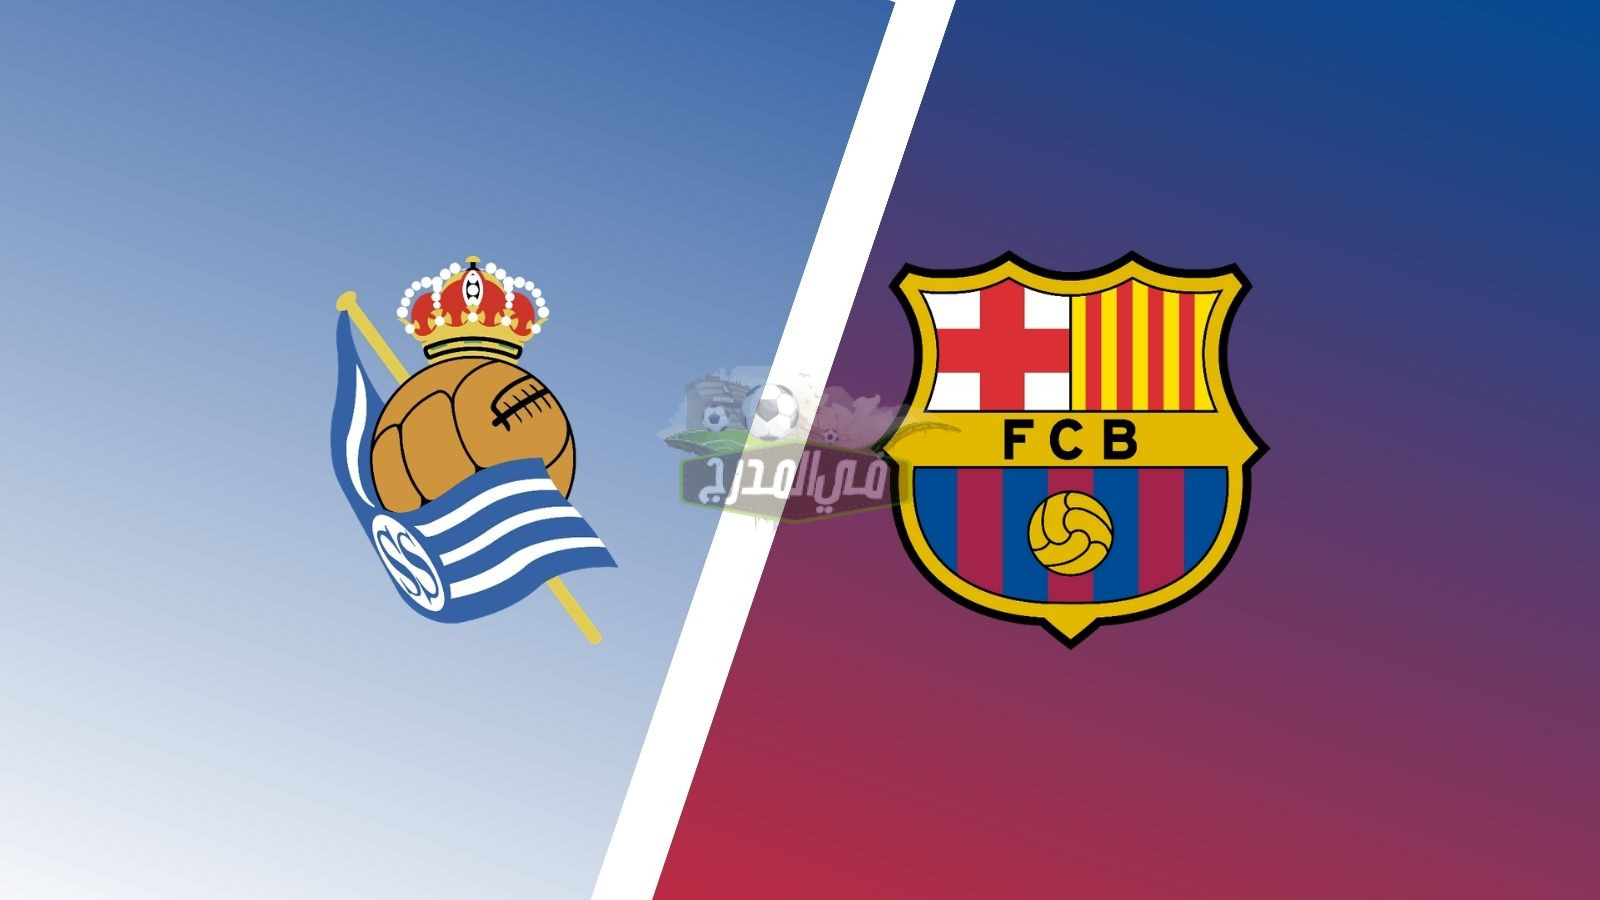 موعد مباراة برشلونة وريال سوسيداد Real Sociedad vs Barcelona في كأس ملك إسبانيا والقنوات الناقلة لها